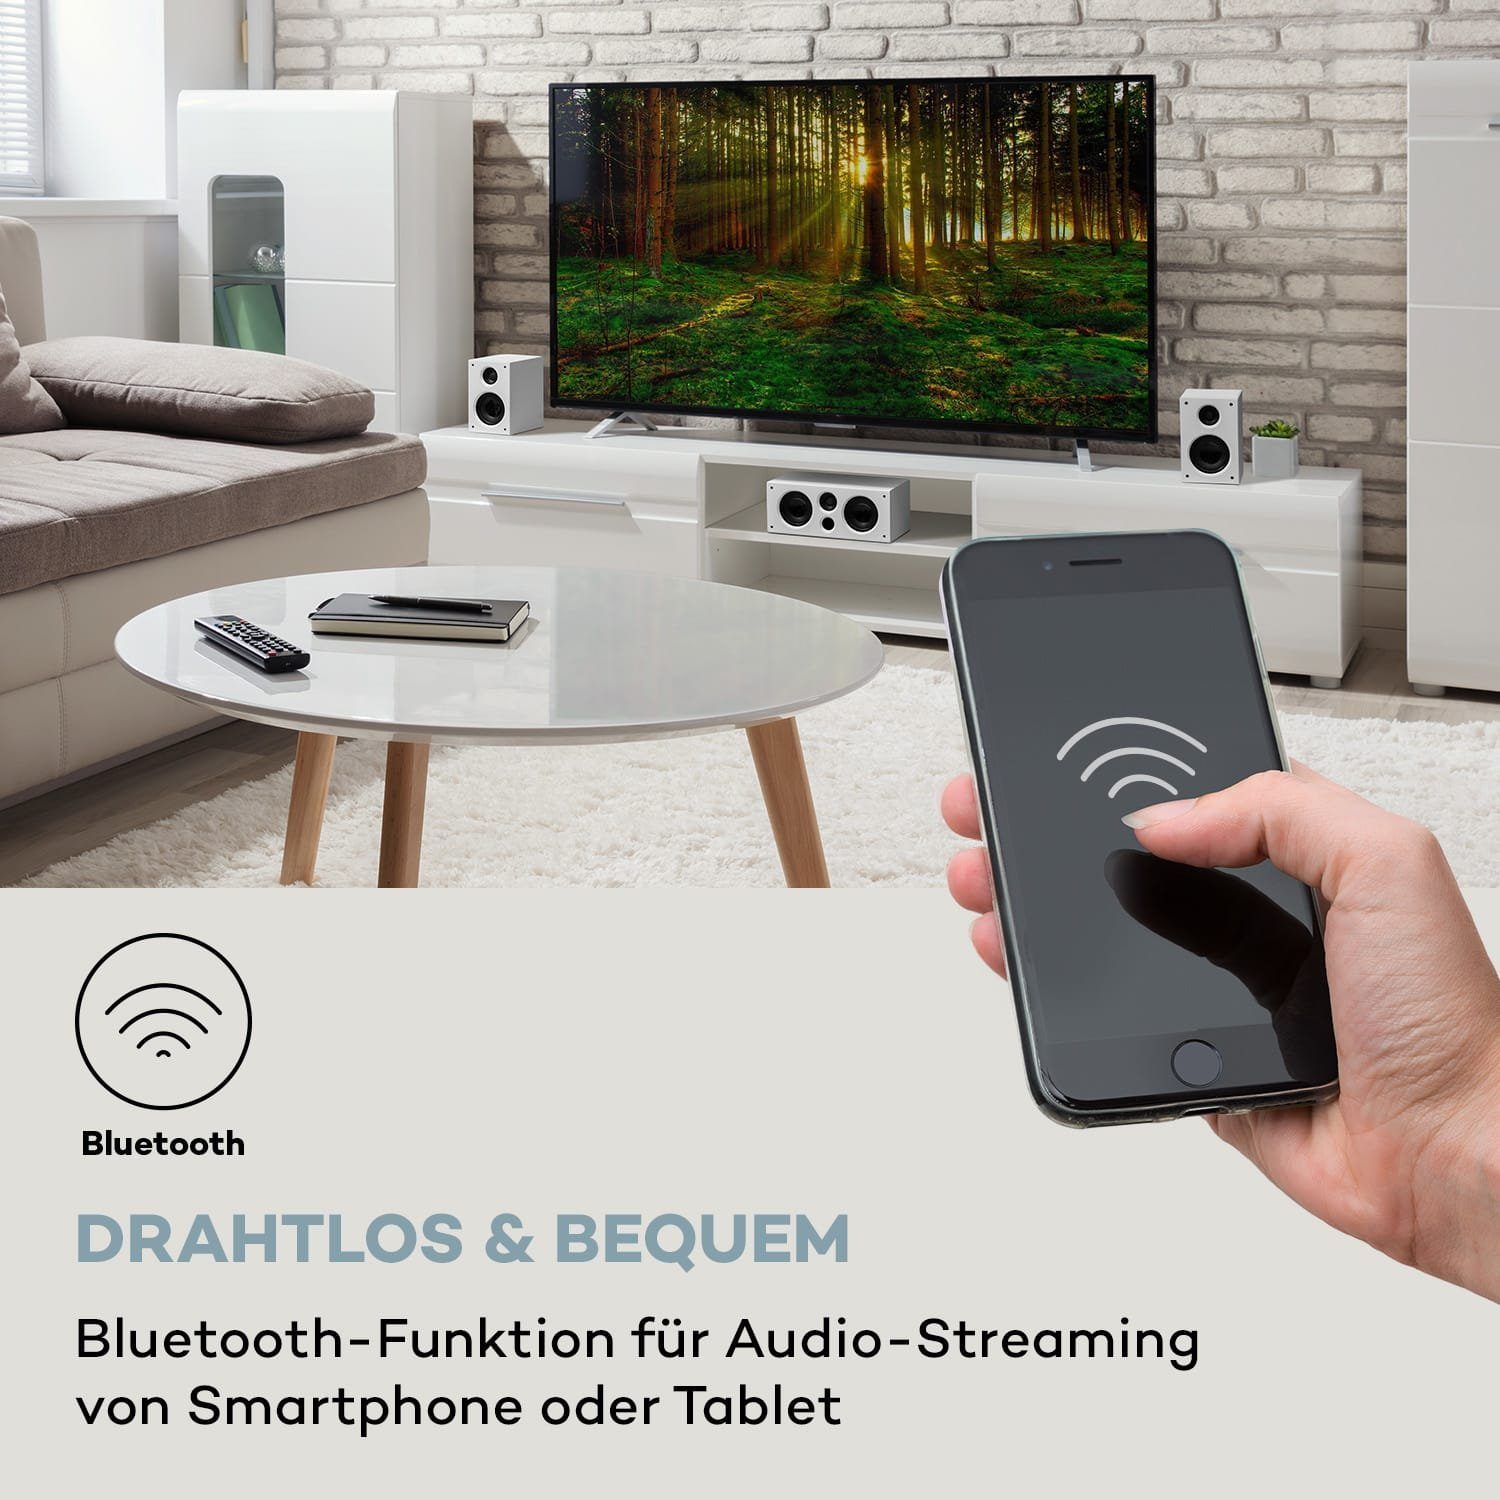 Auna Areal 525 Weiß (Bluetooth) Lautsprecher DG 5.1-Surround-System System 5.1